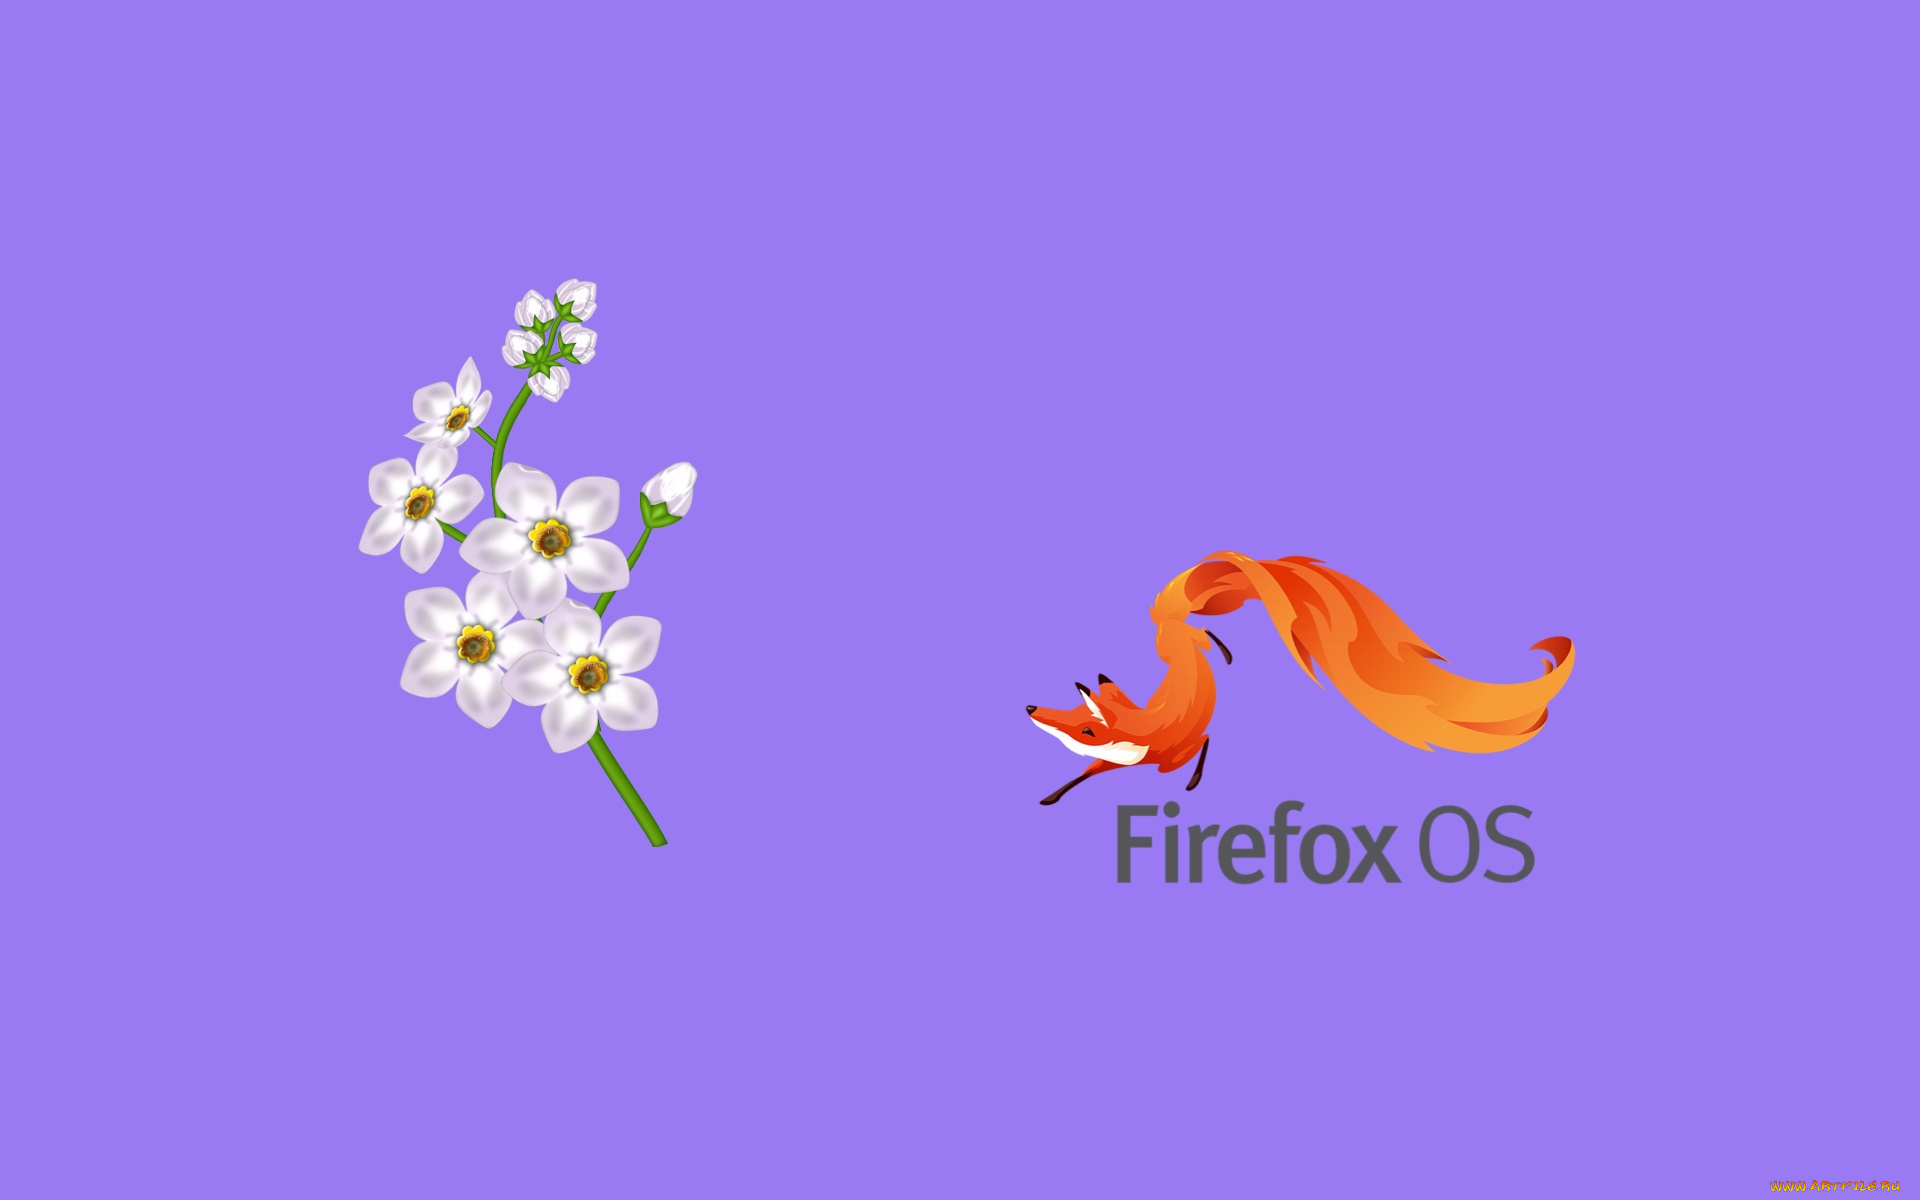 компьютеры, mozilla, firefox, фон, логотип